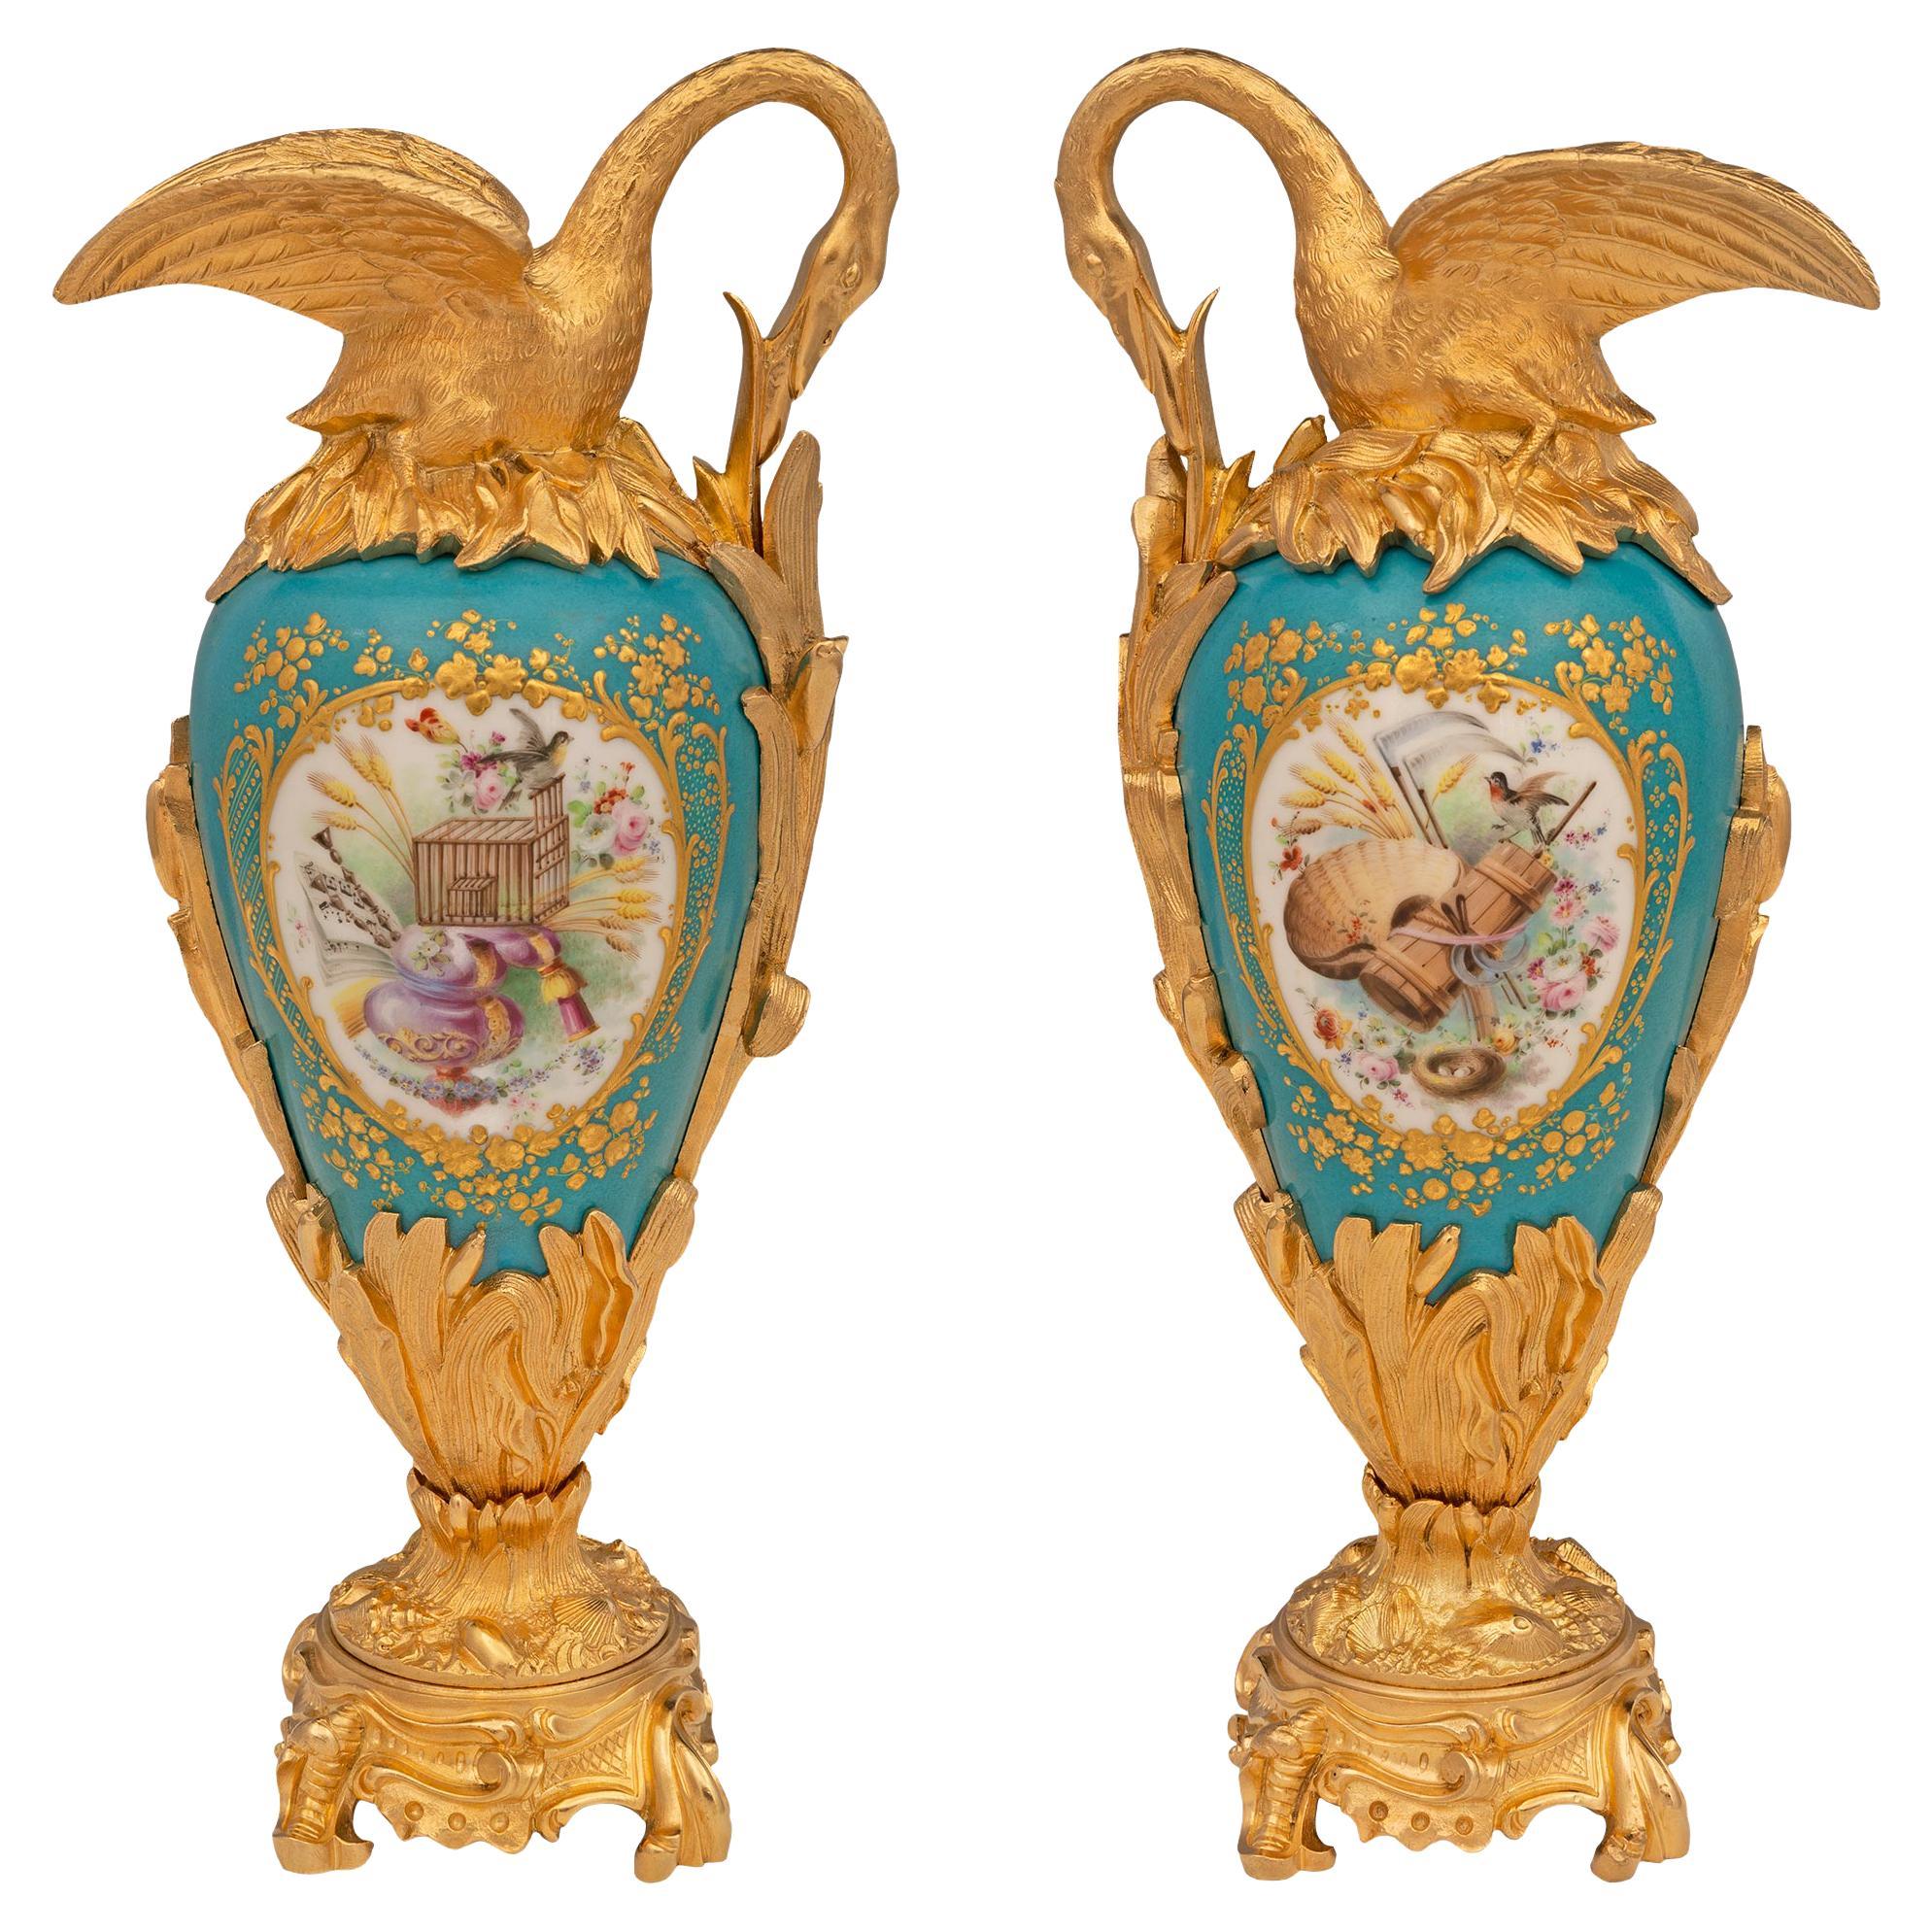 Paar französische Louis XVI St. Svres-Porzellan- und Goldbronze-Würfel aus dem 19. Jahrhundert